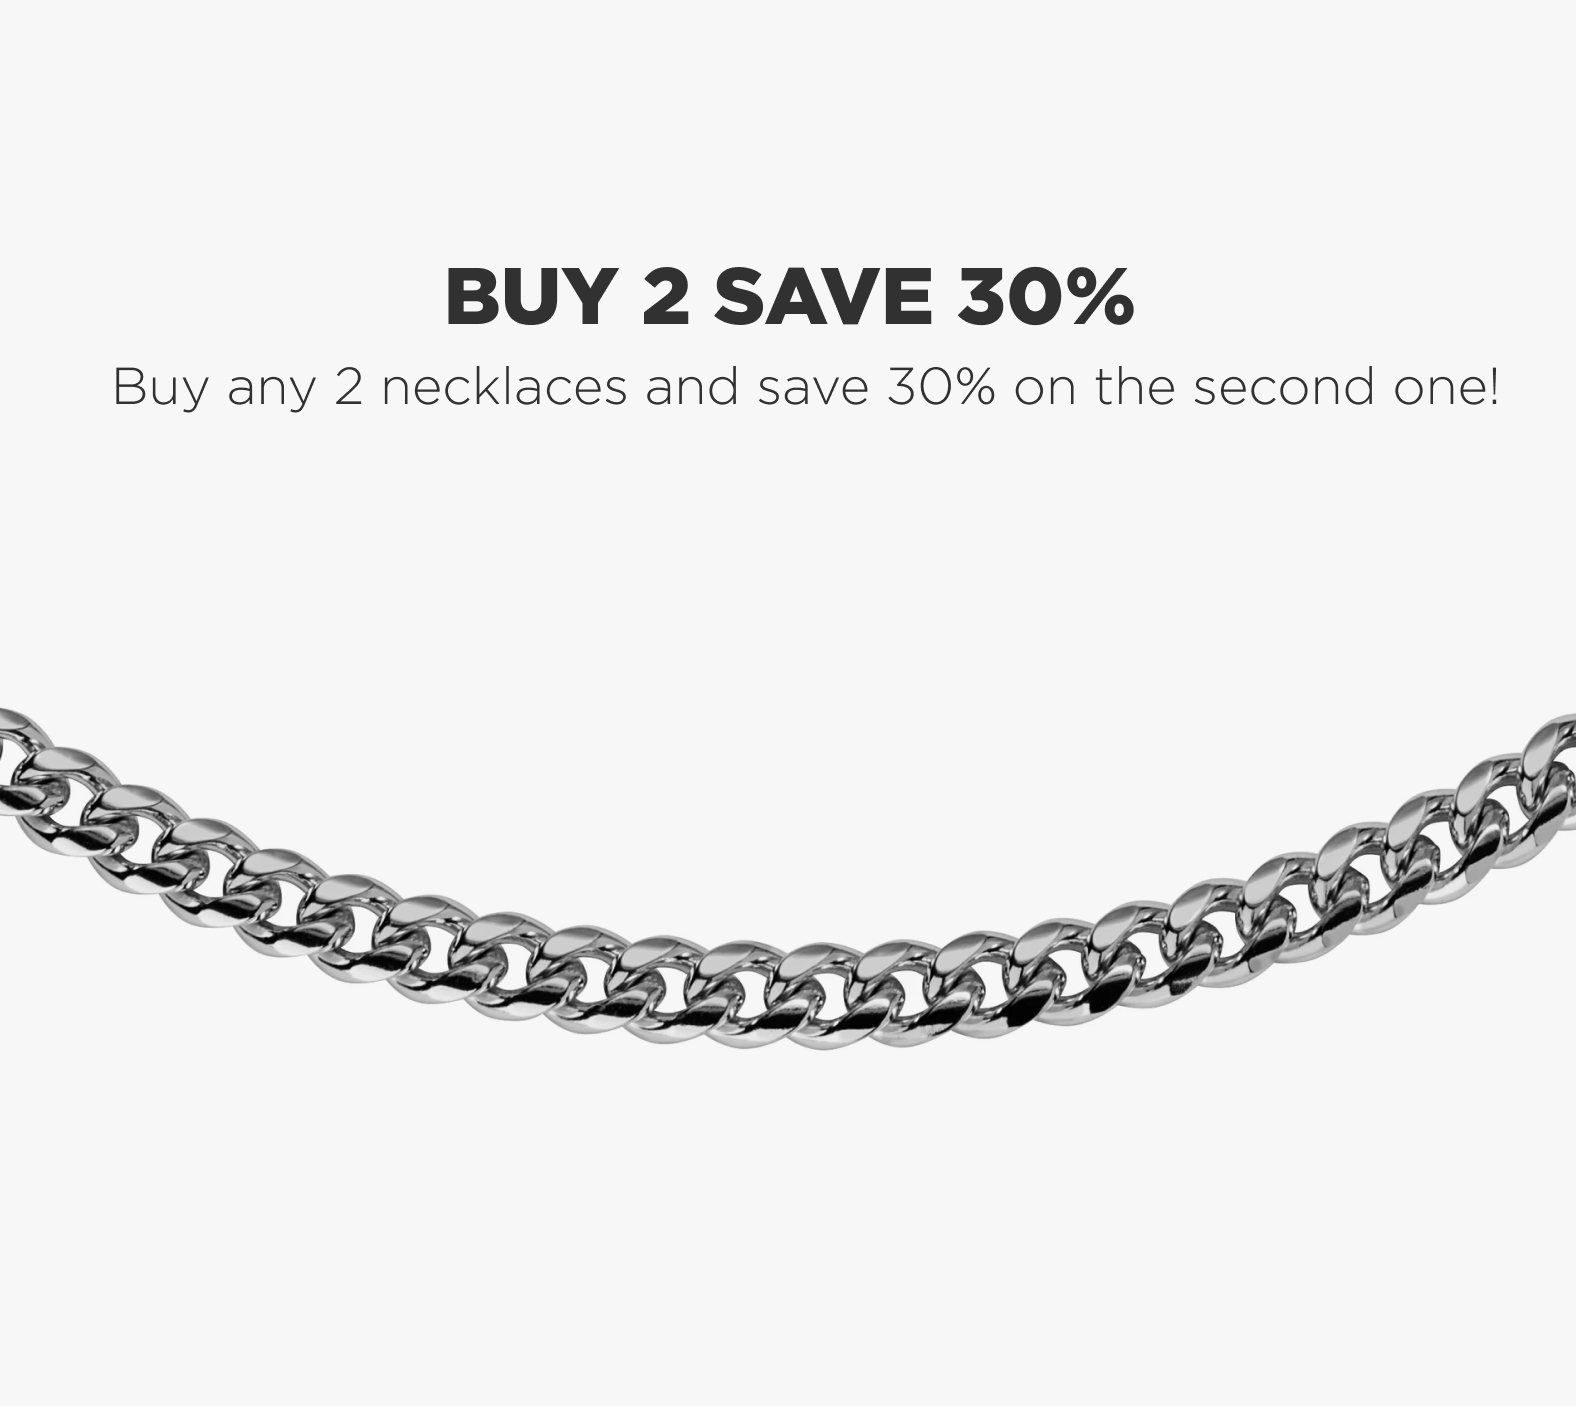 Louis Vuitton Palladium Metal Dog Tag Locket Necklace (B grade)